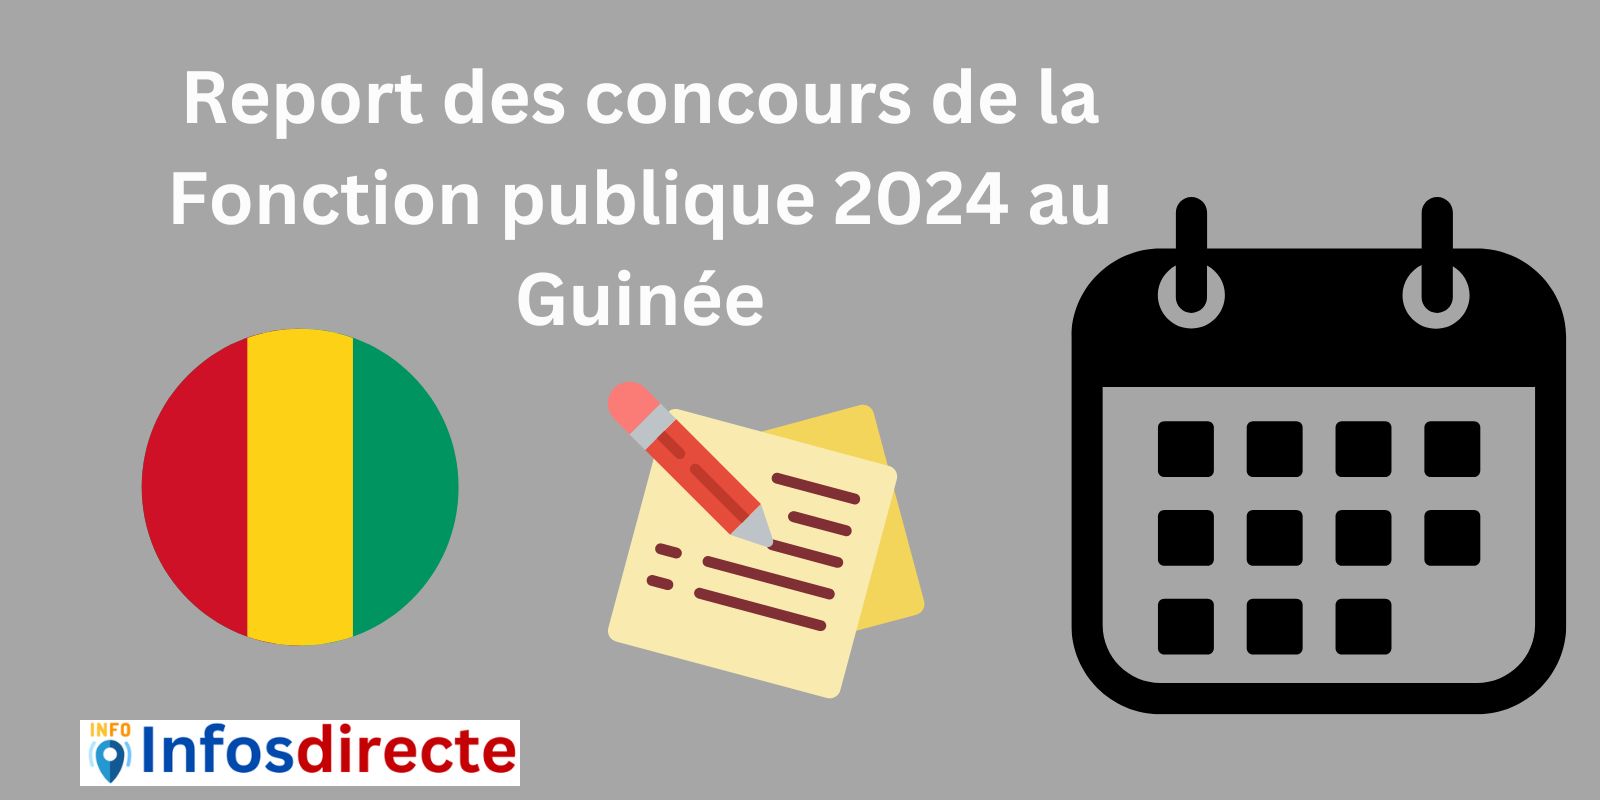 Report des concours de la Fonction publique 2024 au Guinée